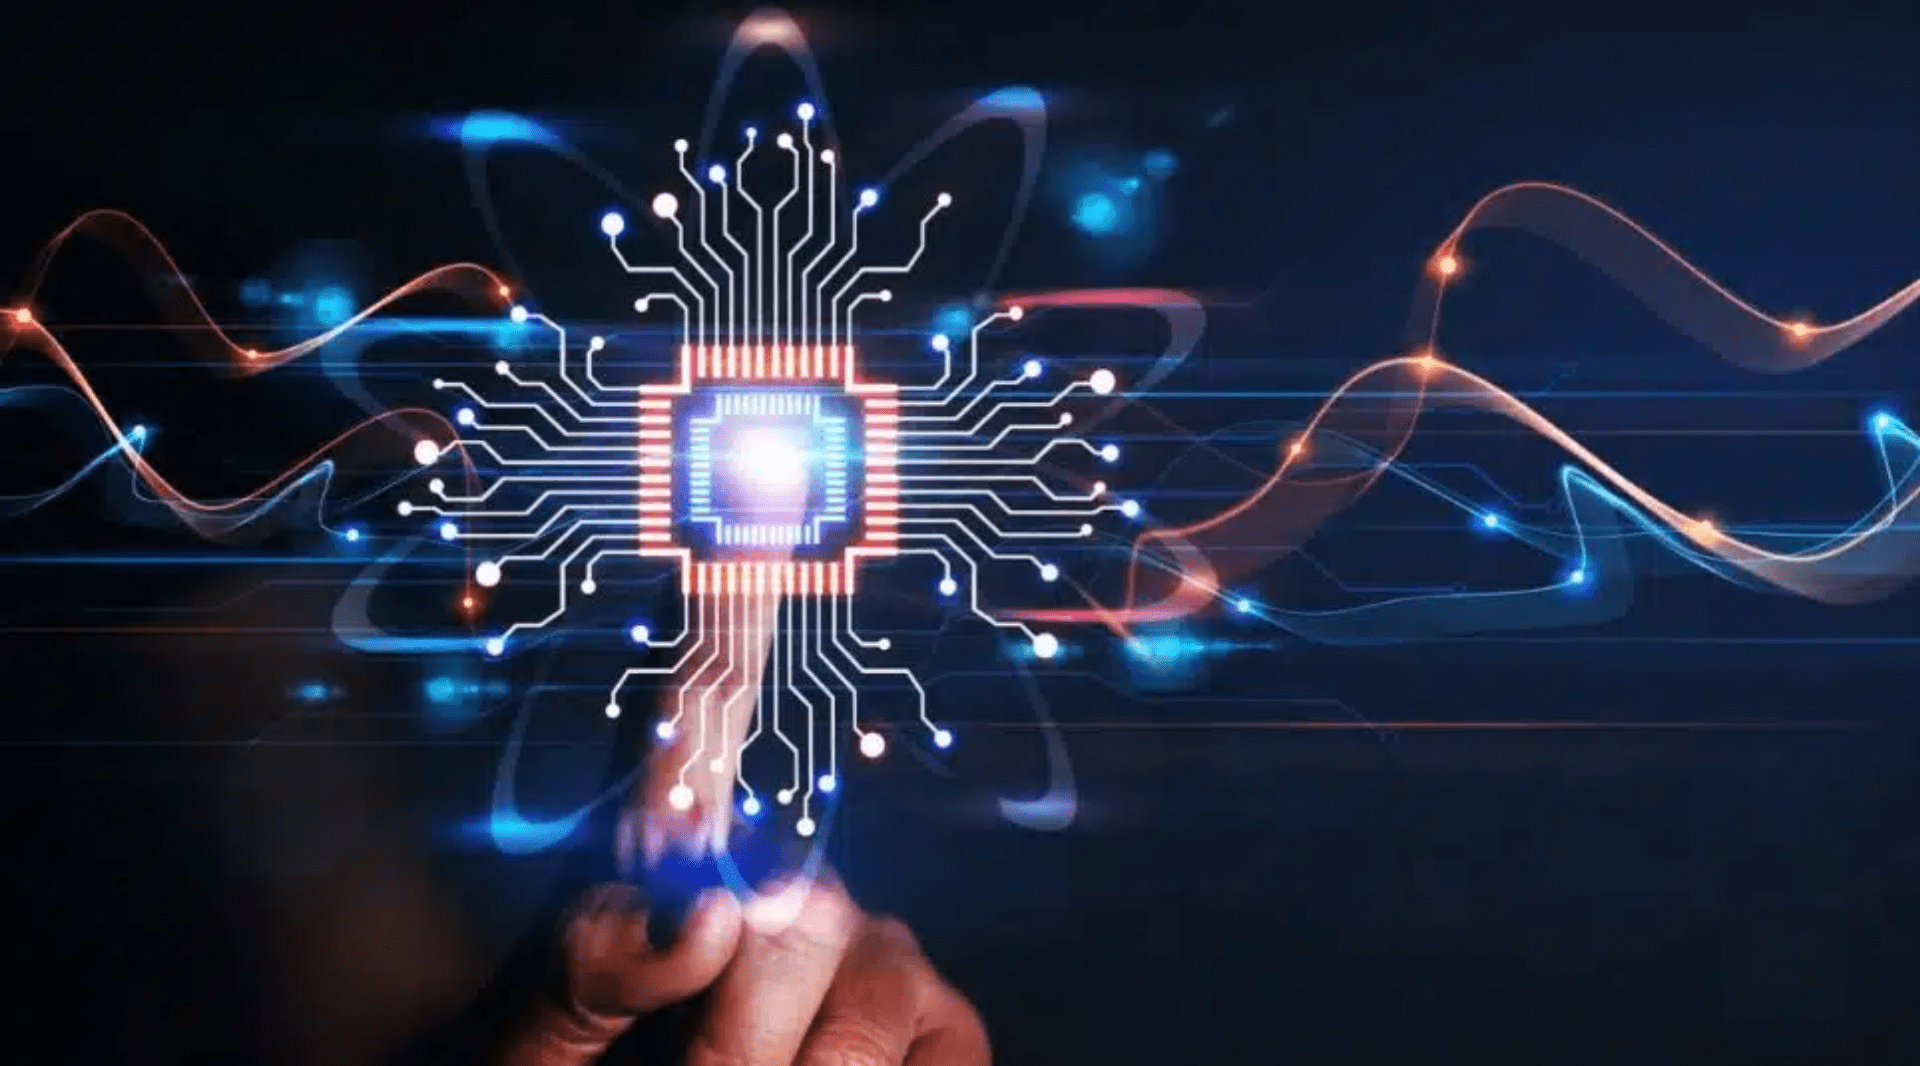 SXSW 2023: Tecnologias como Inteligência Artificial devem se consolidar, mas conexão humana se mantém fundamental